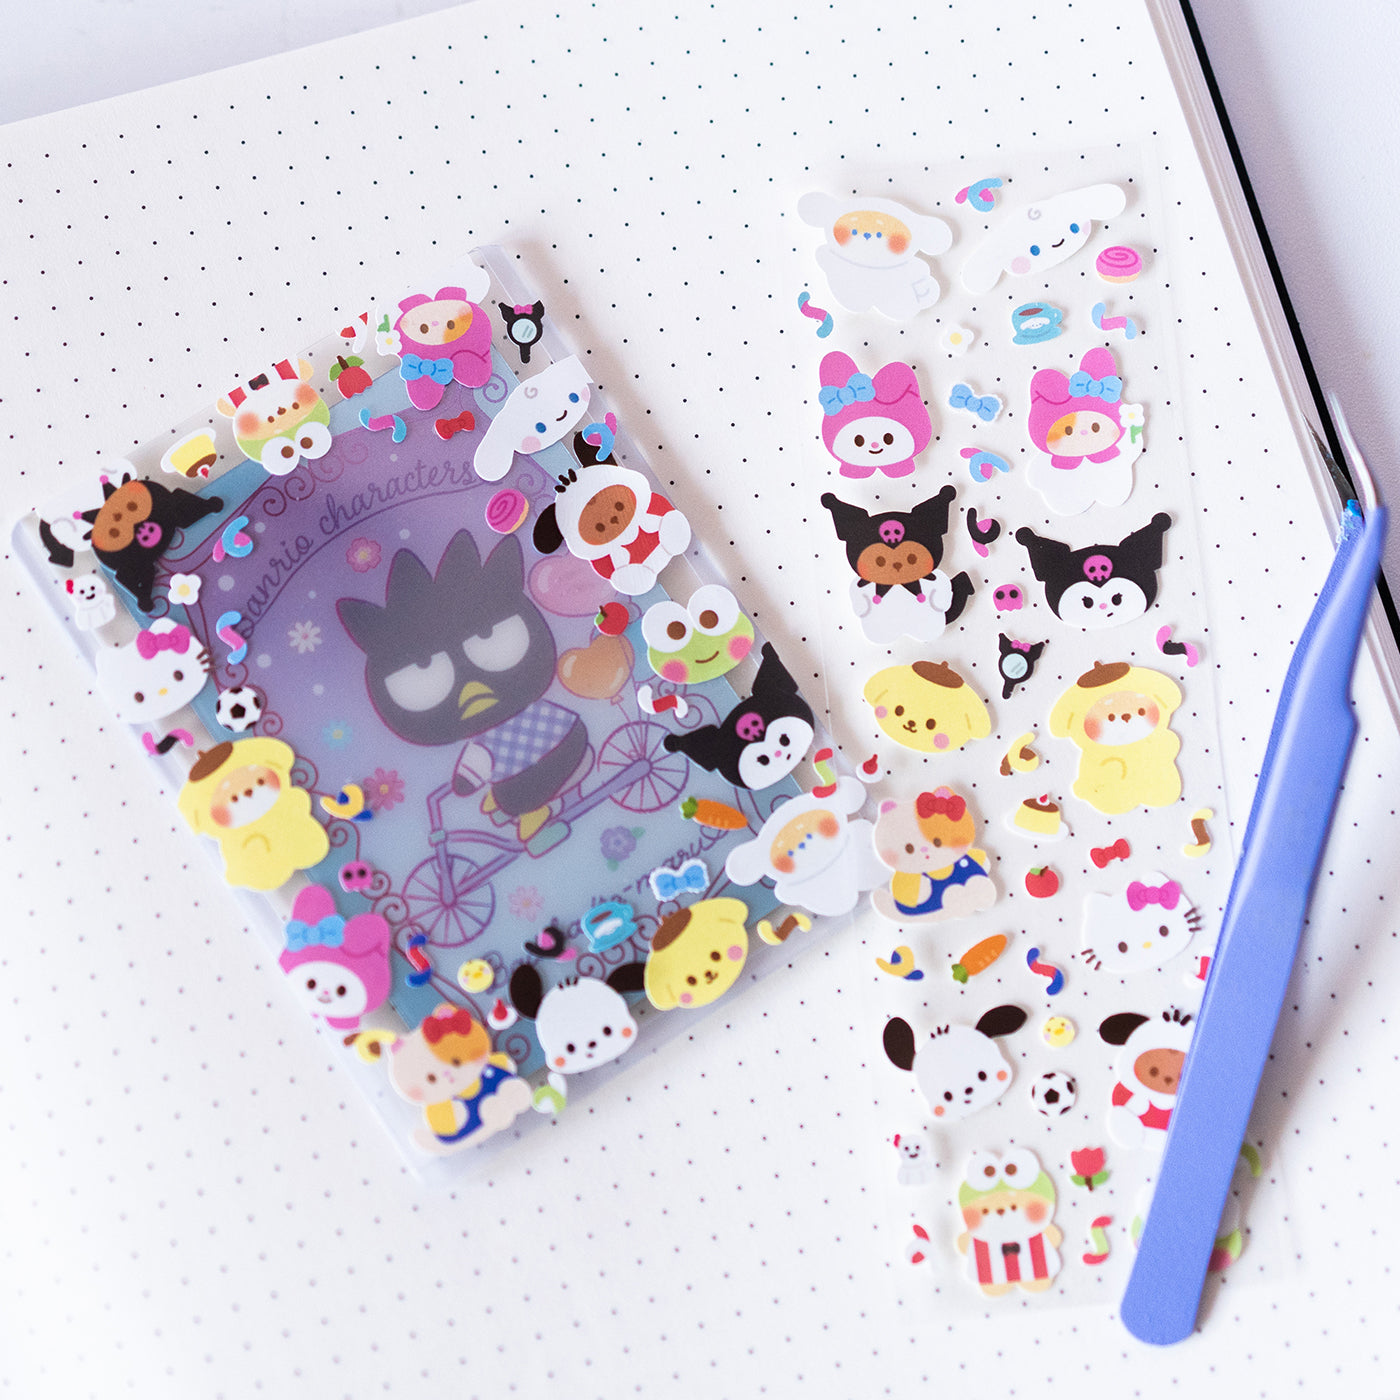 Sanrio Characters and Minty Friends Fan Art Journal Sticker Sheet